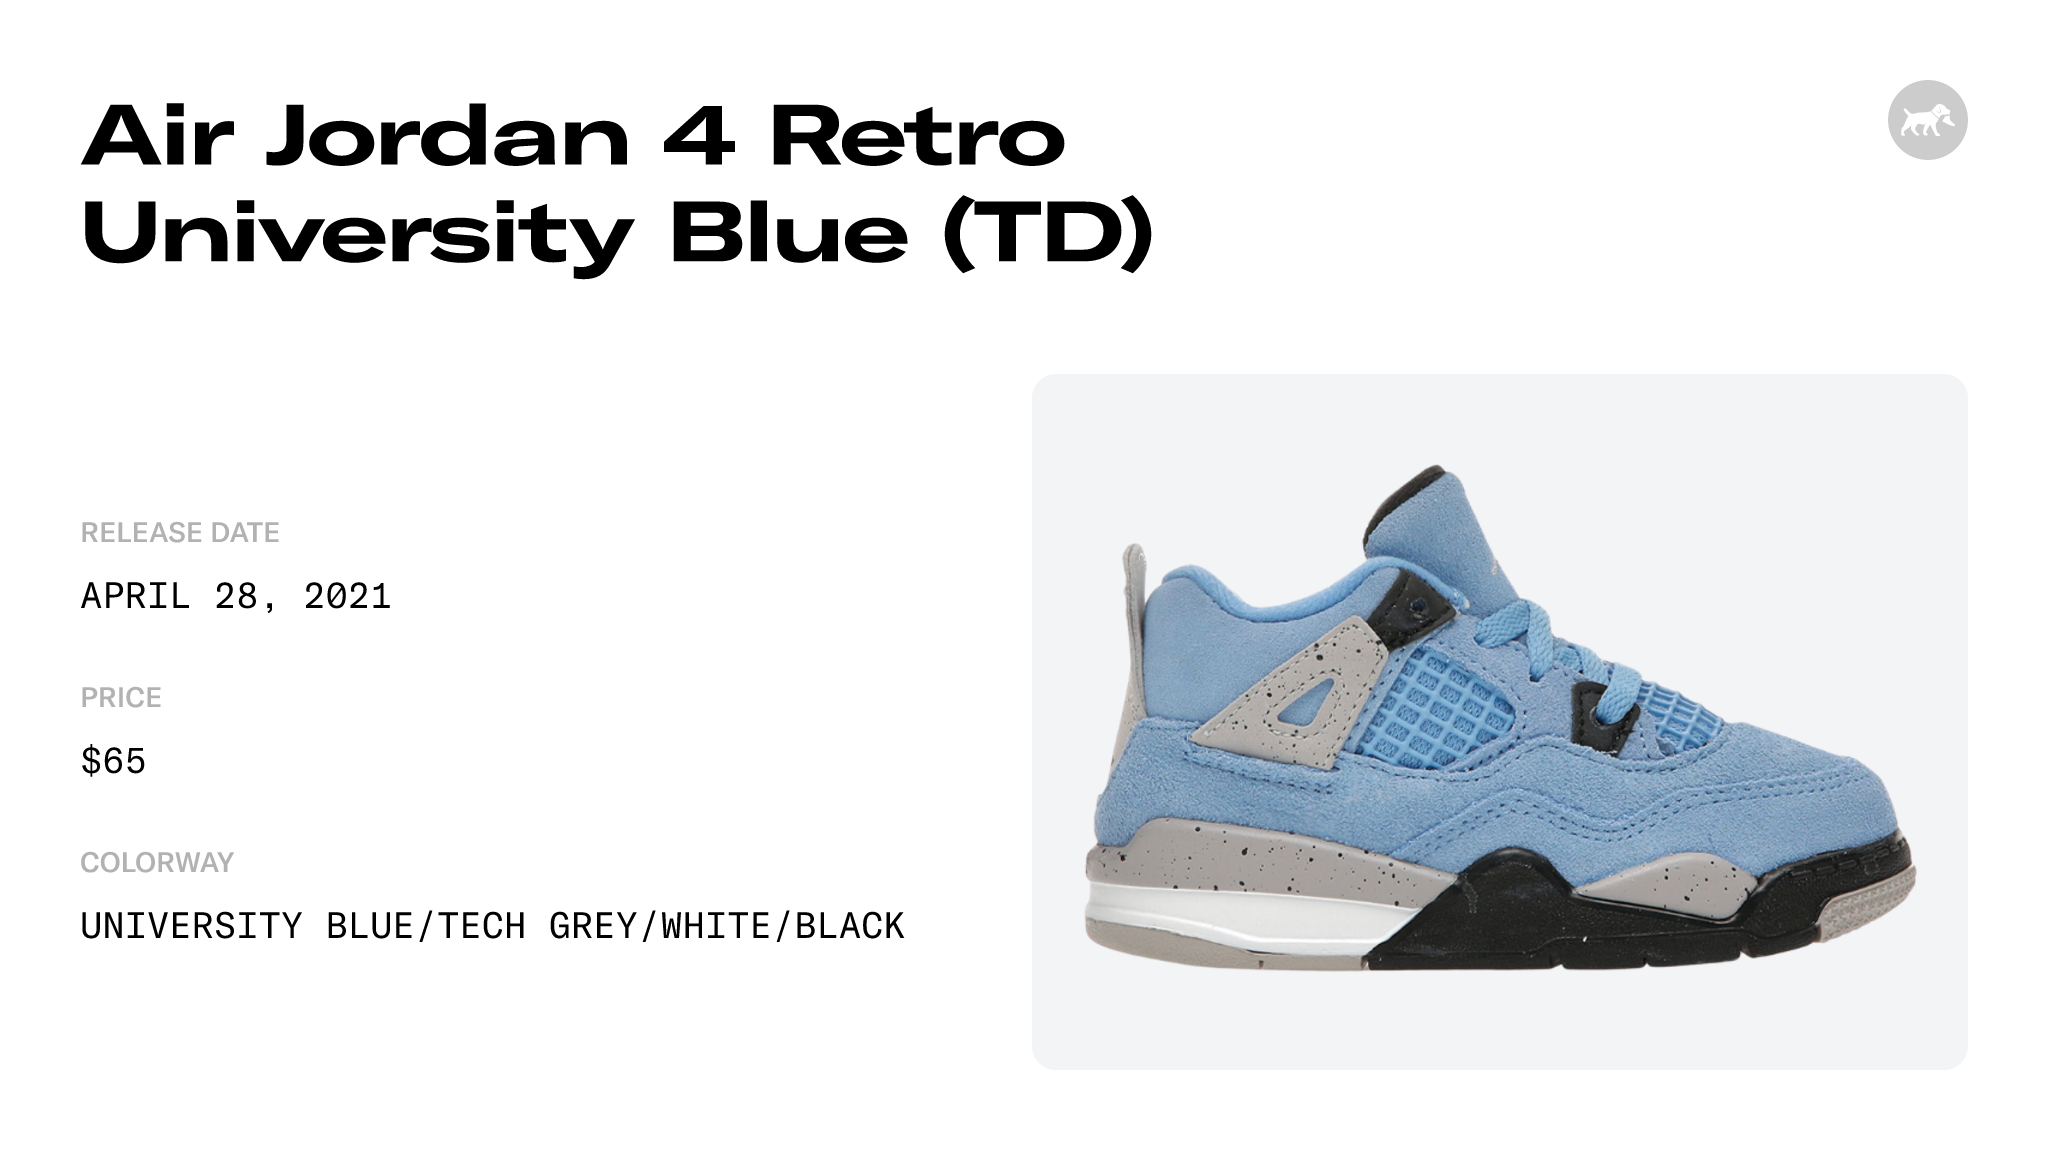 Air Jordan 4 Retro TD University Blue